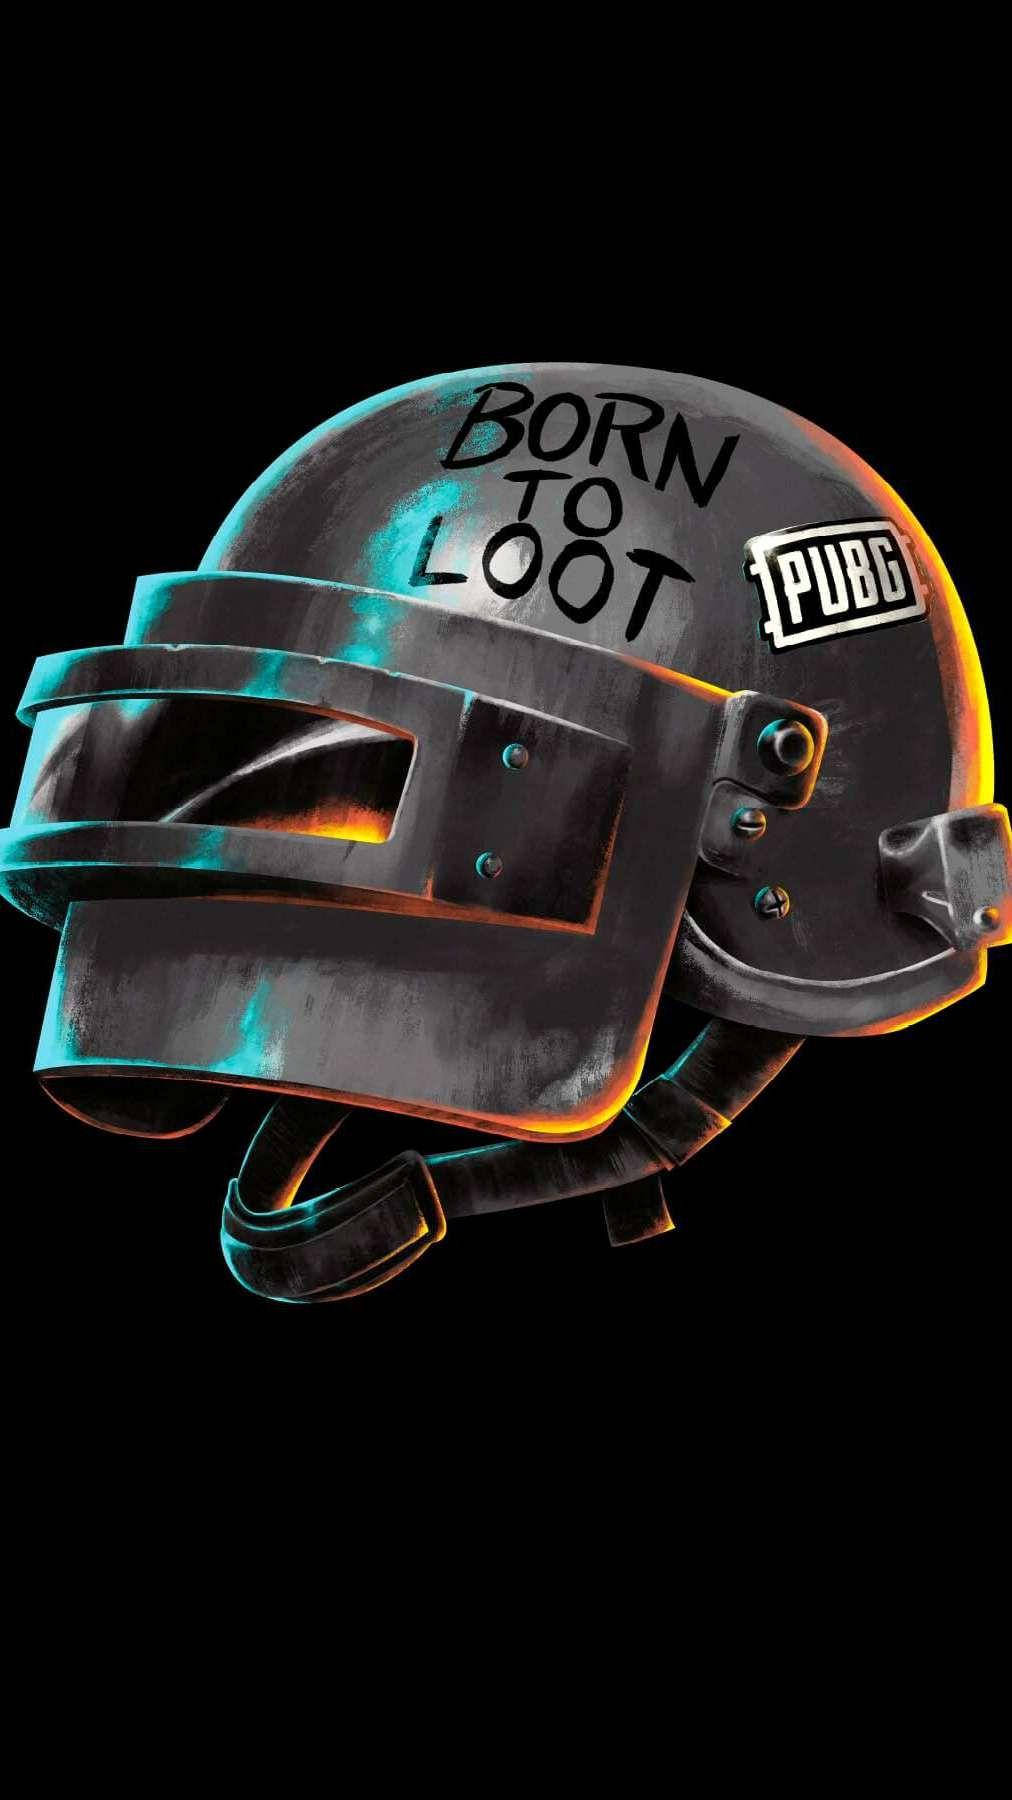 PUBG Lover Born To Loot Helmet Wallpaper